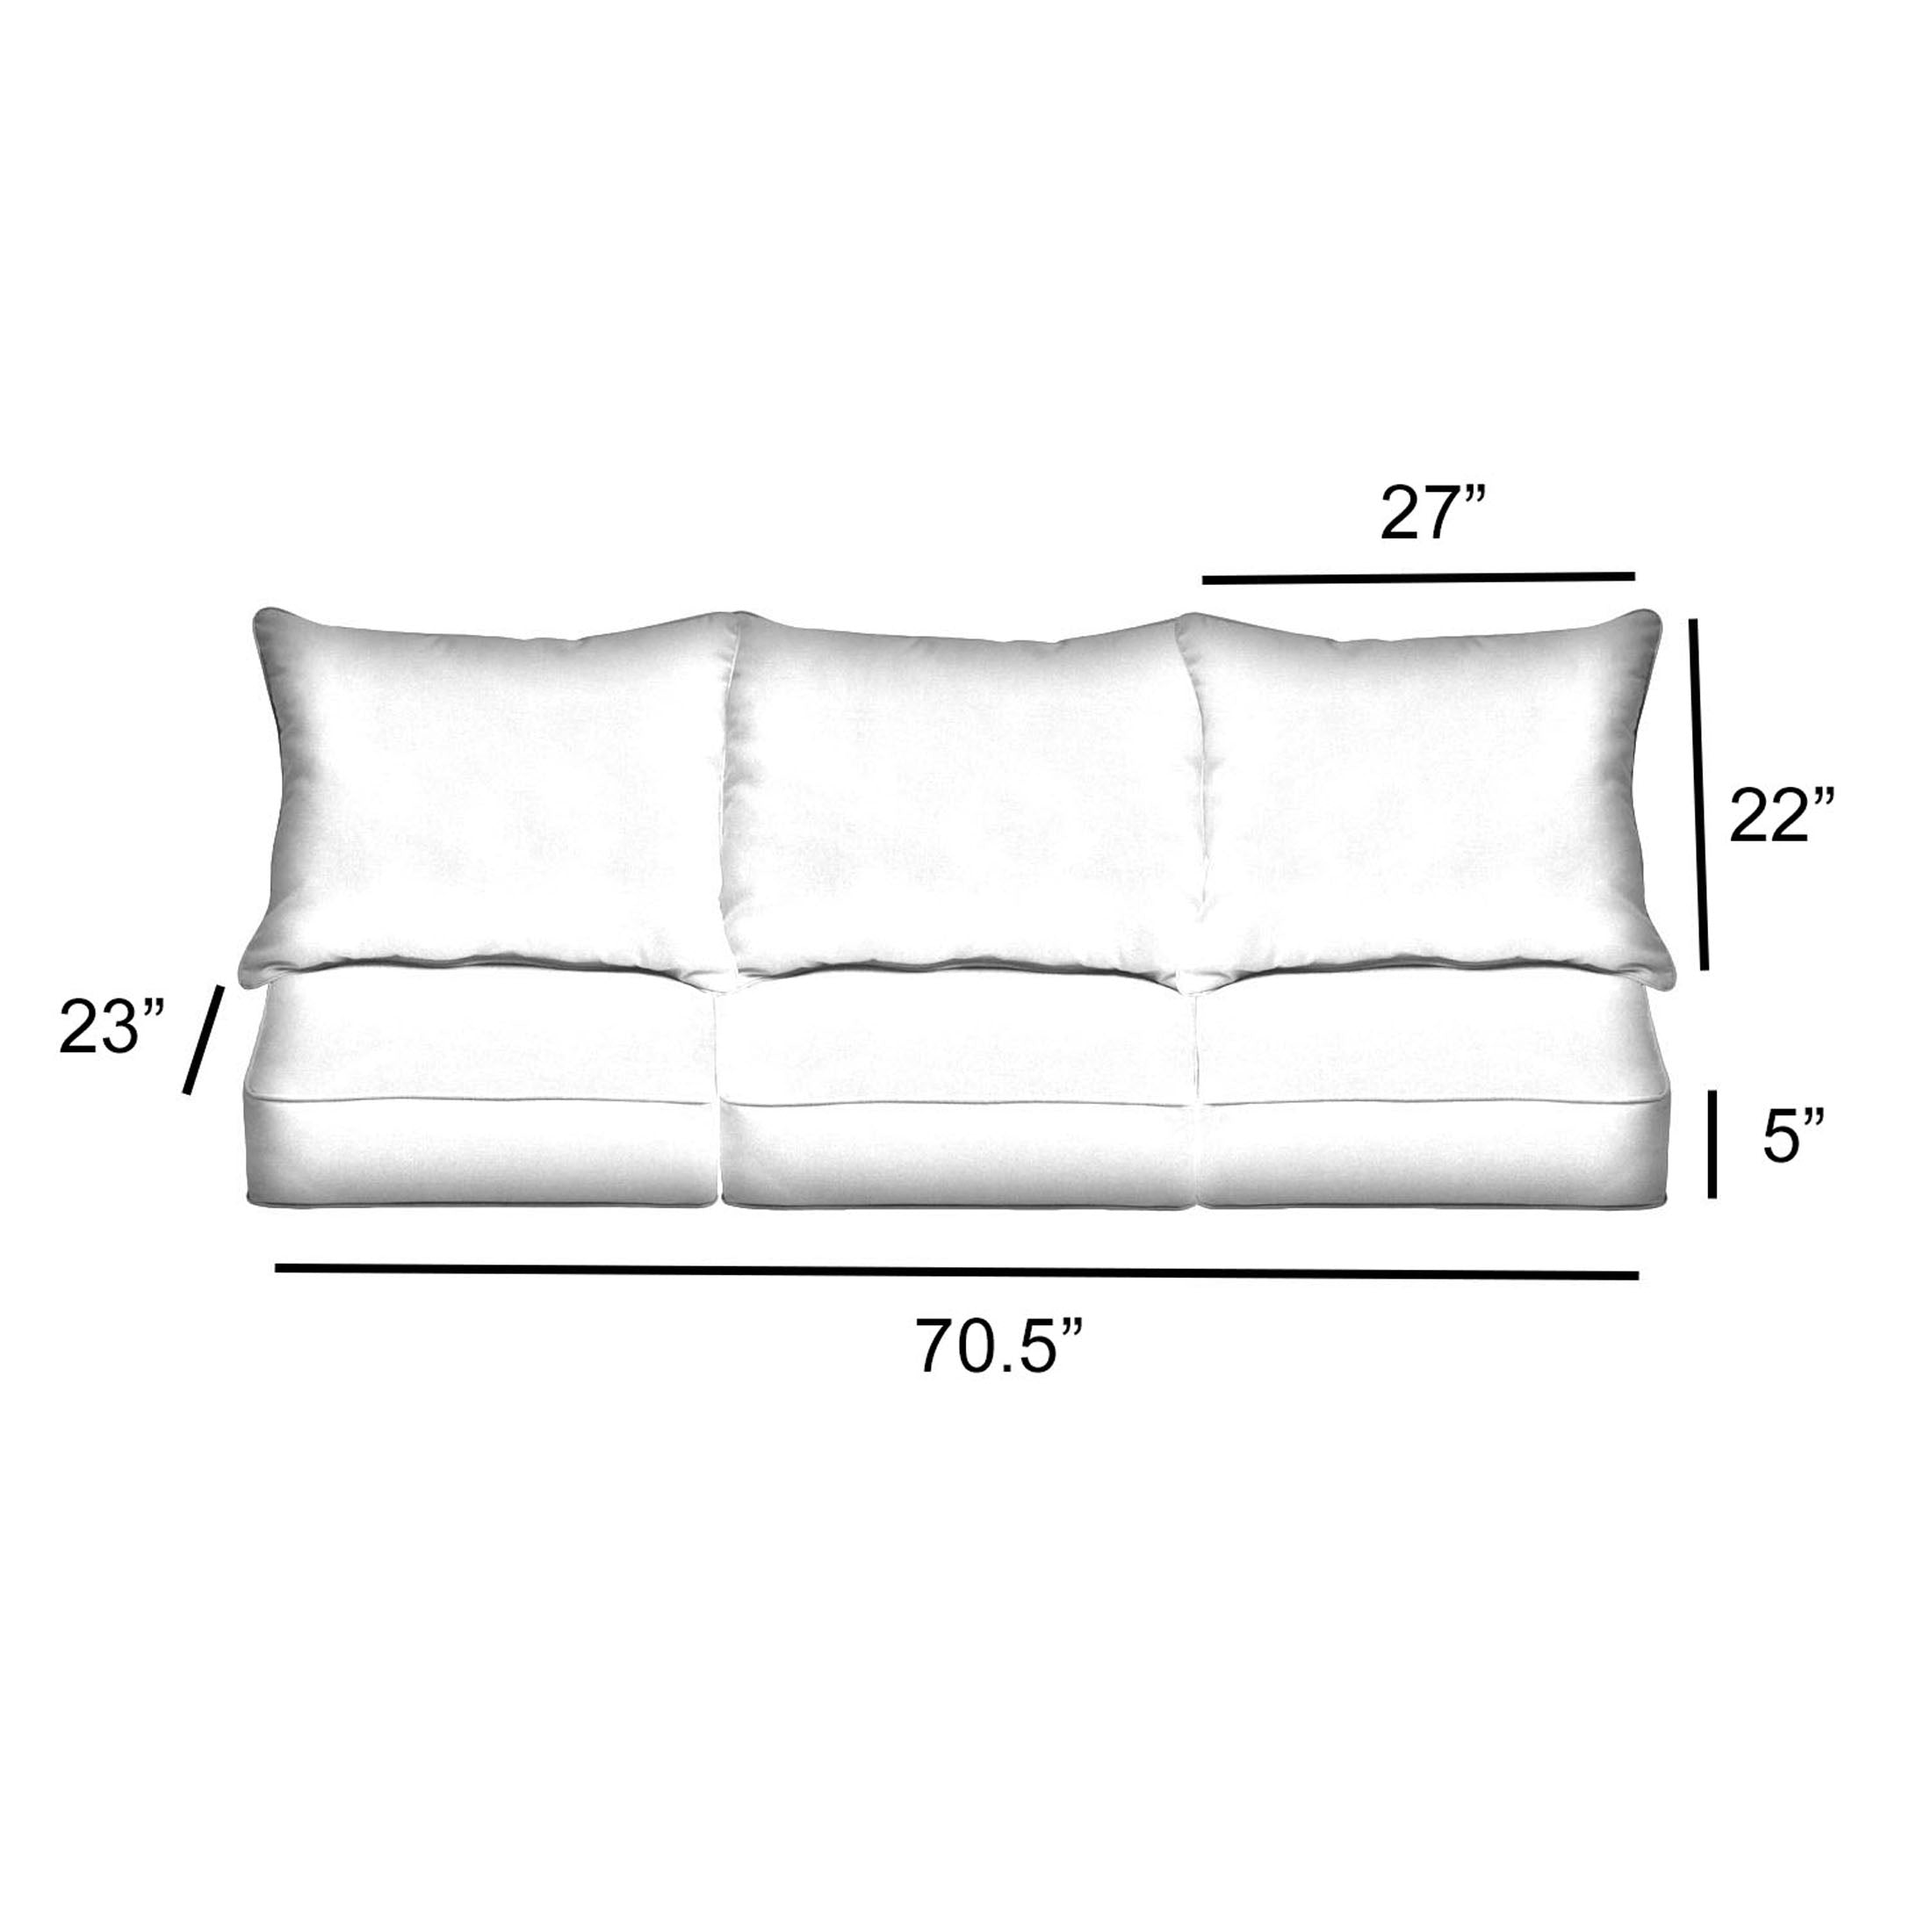 Rectangle Outdoor Deep Seating Sofa Pillow and Cushion Set